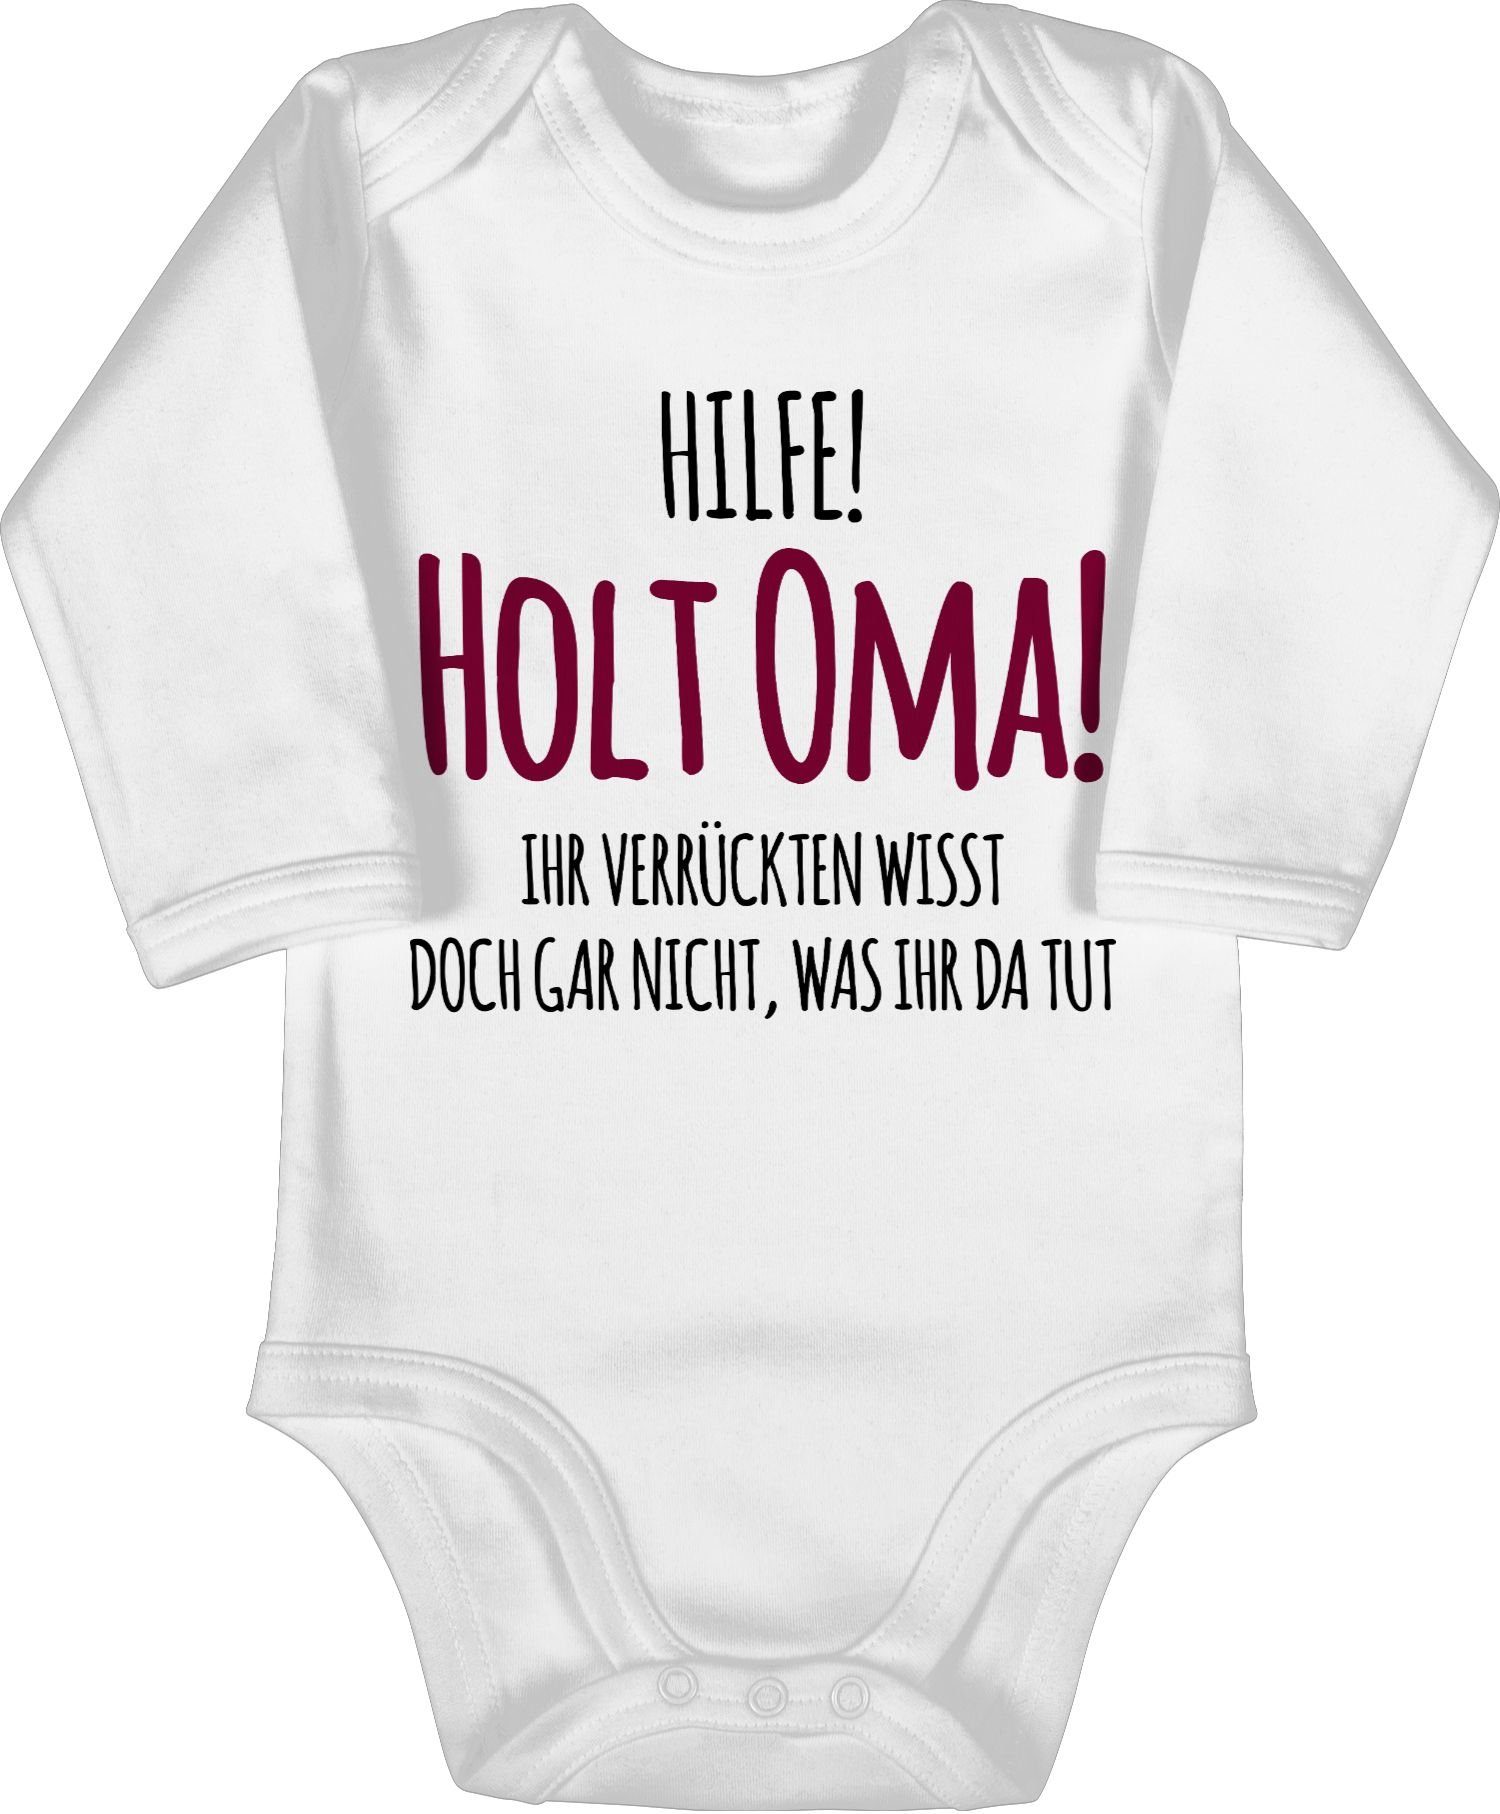 Shirtbody Geburt Geschenk Omi Hilfe Sprüche 1 - Weiß Shirtracer Baby Holt Oma